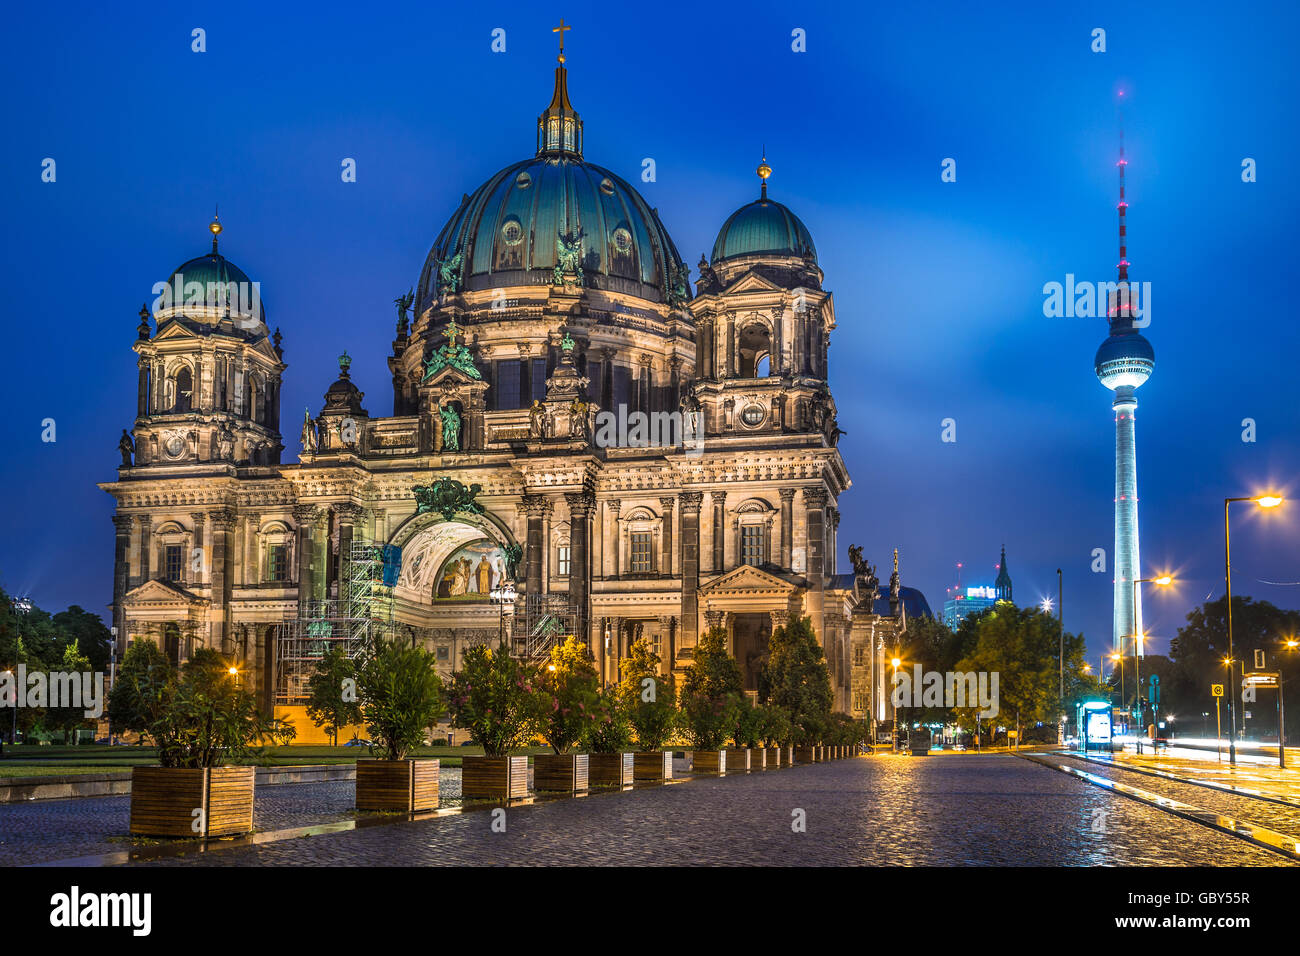 Cathédrale de Berlin avec célèbre tour de la télévision à l'arrière-plan dans le crépuscule pendant heure bleue au crépuscule, Berlin Mitte, Allemagne Banque D'Images